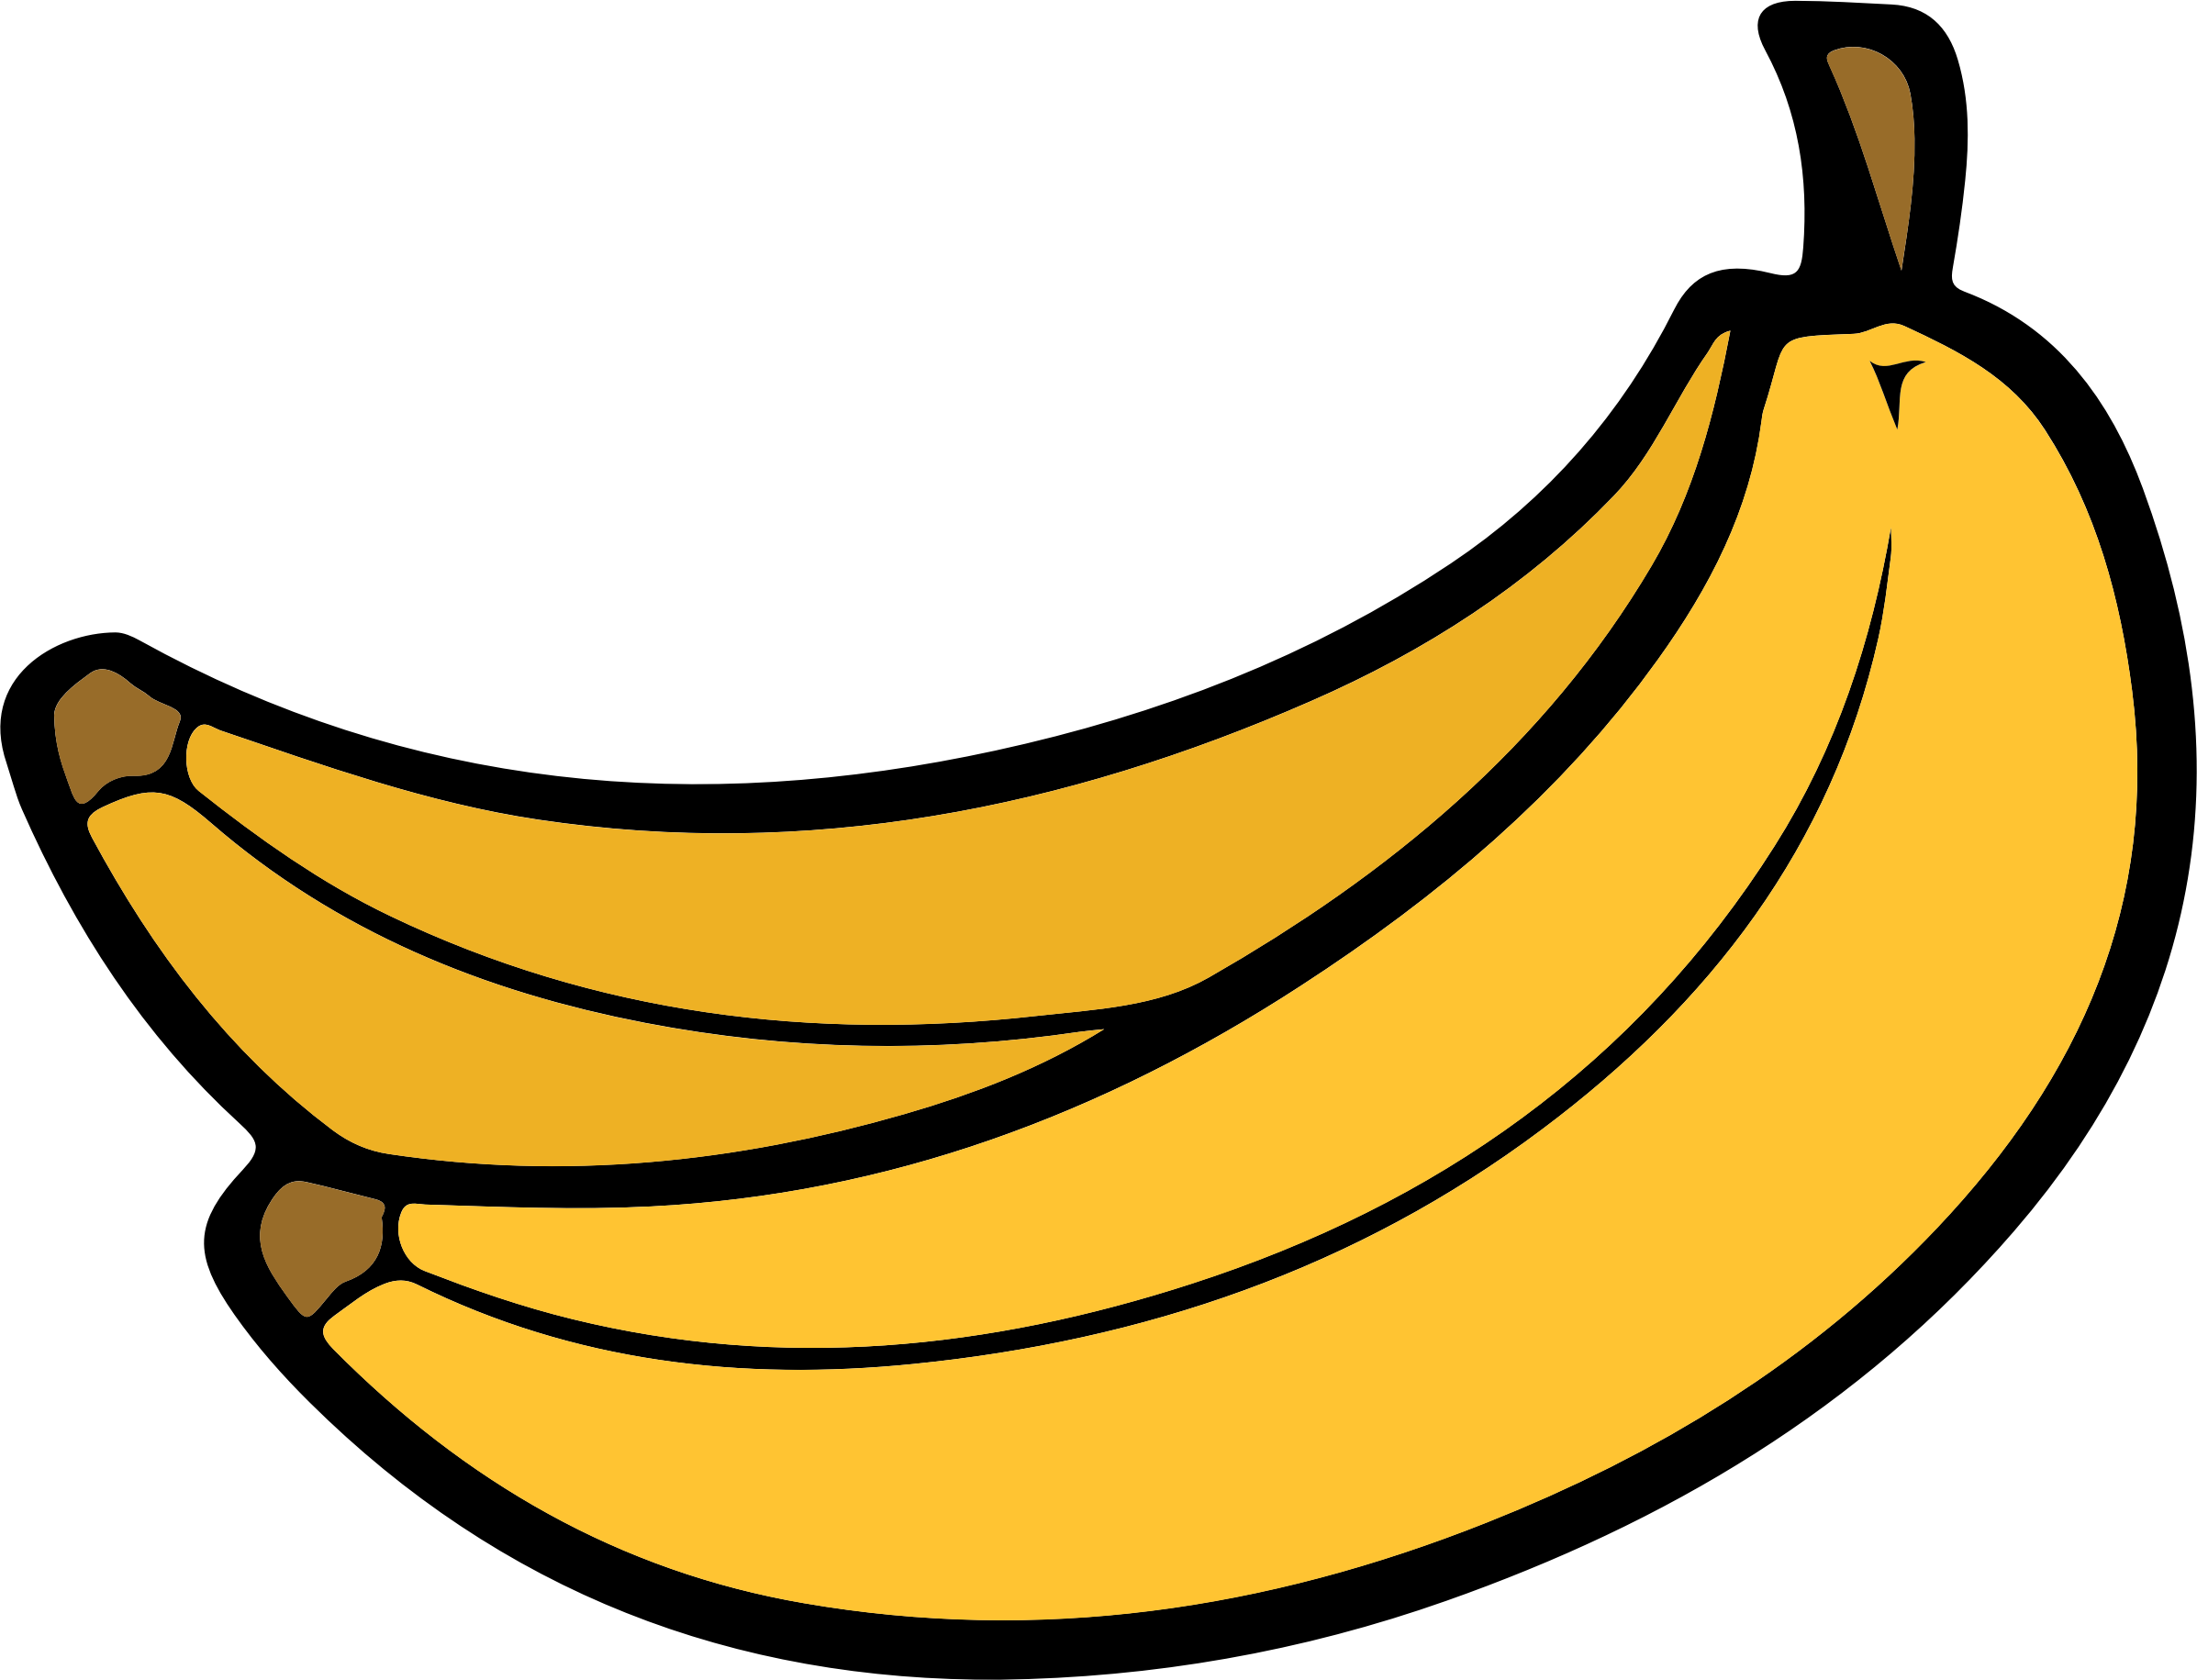 Banana - Two Bananas, Transparent background PNG HD thumbnail